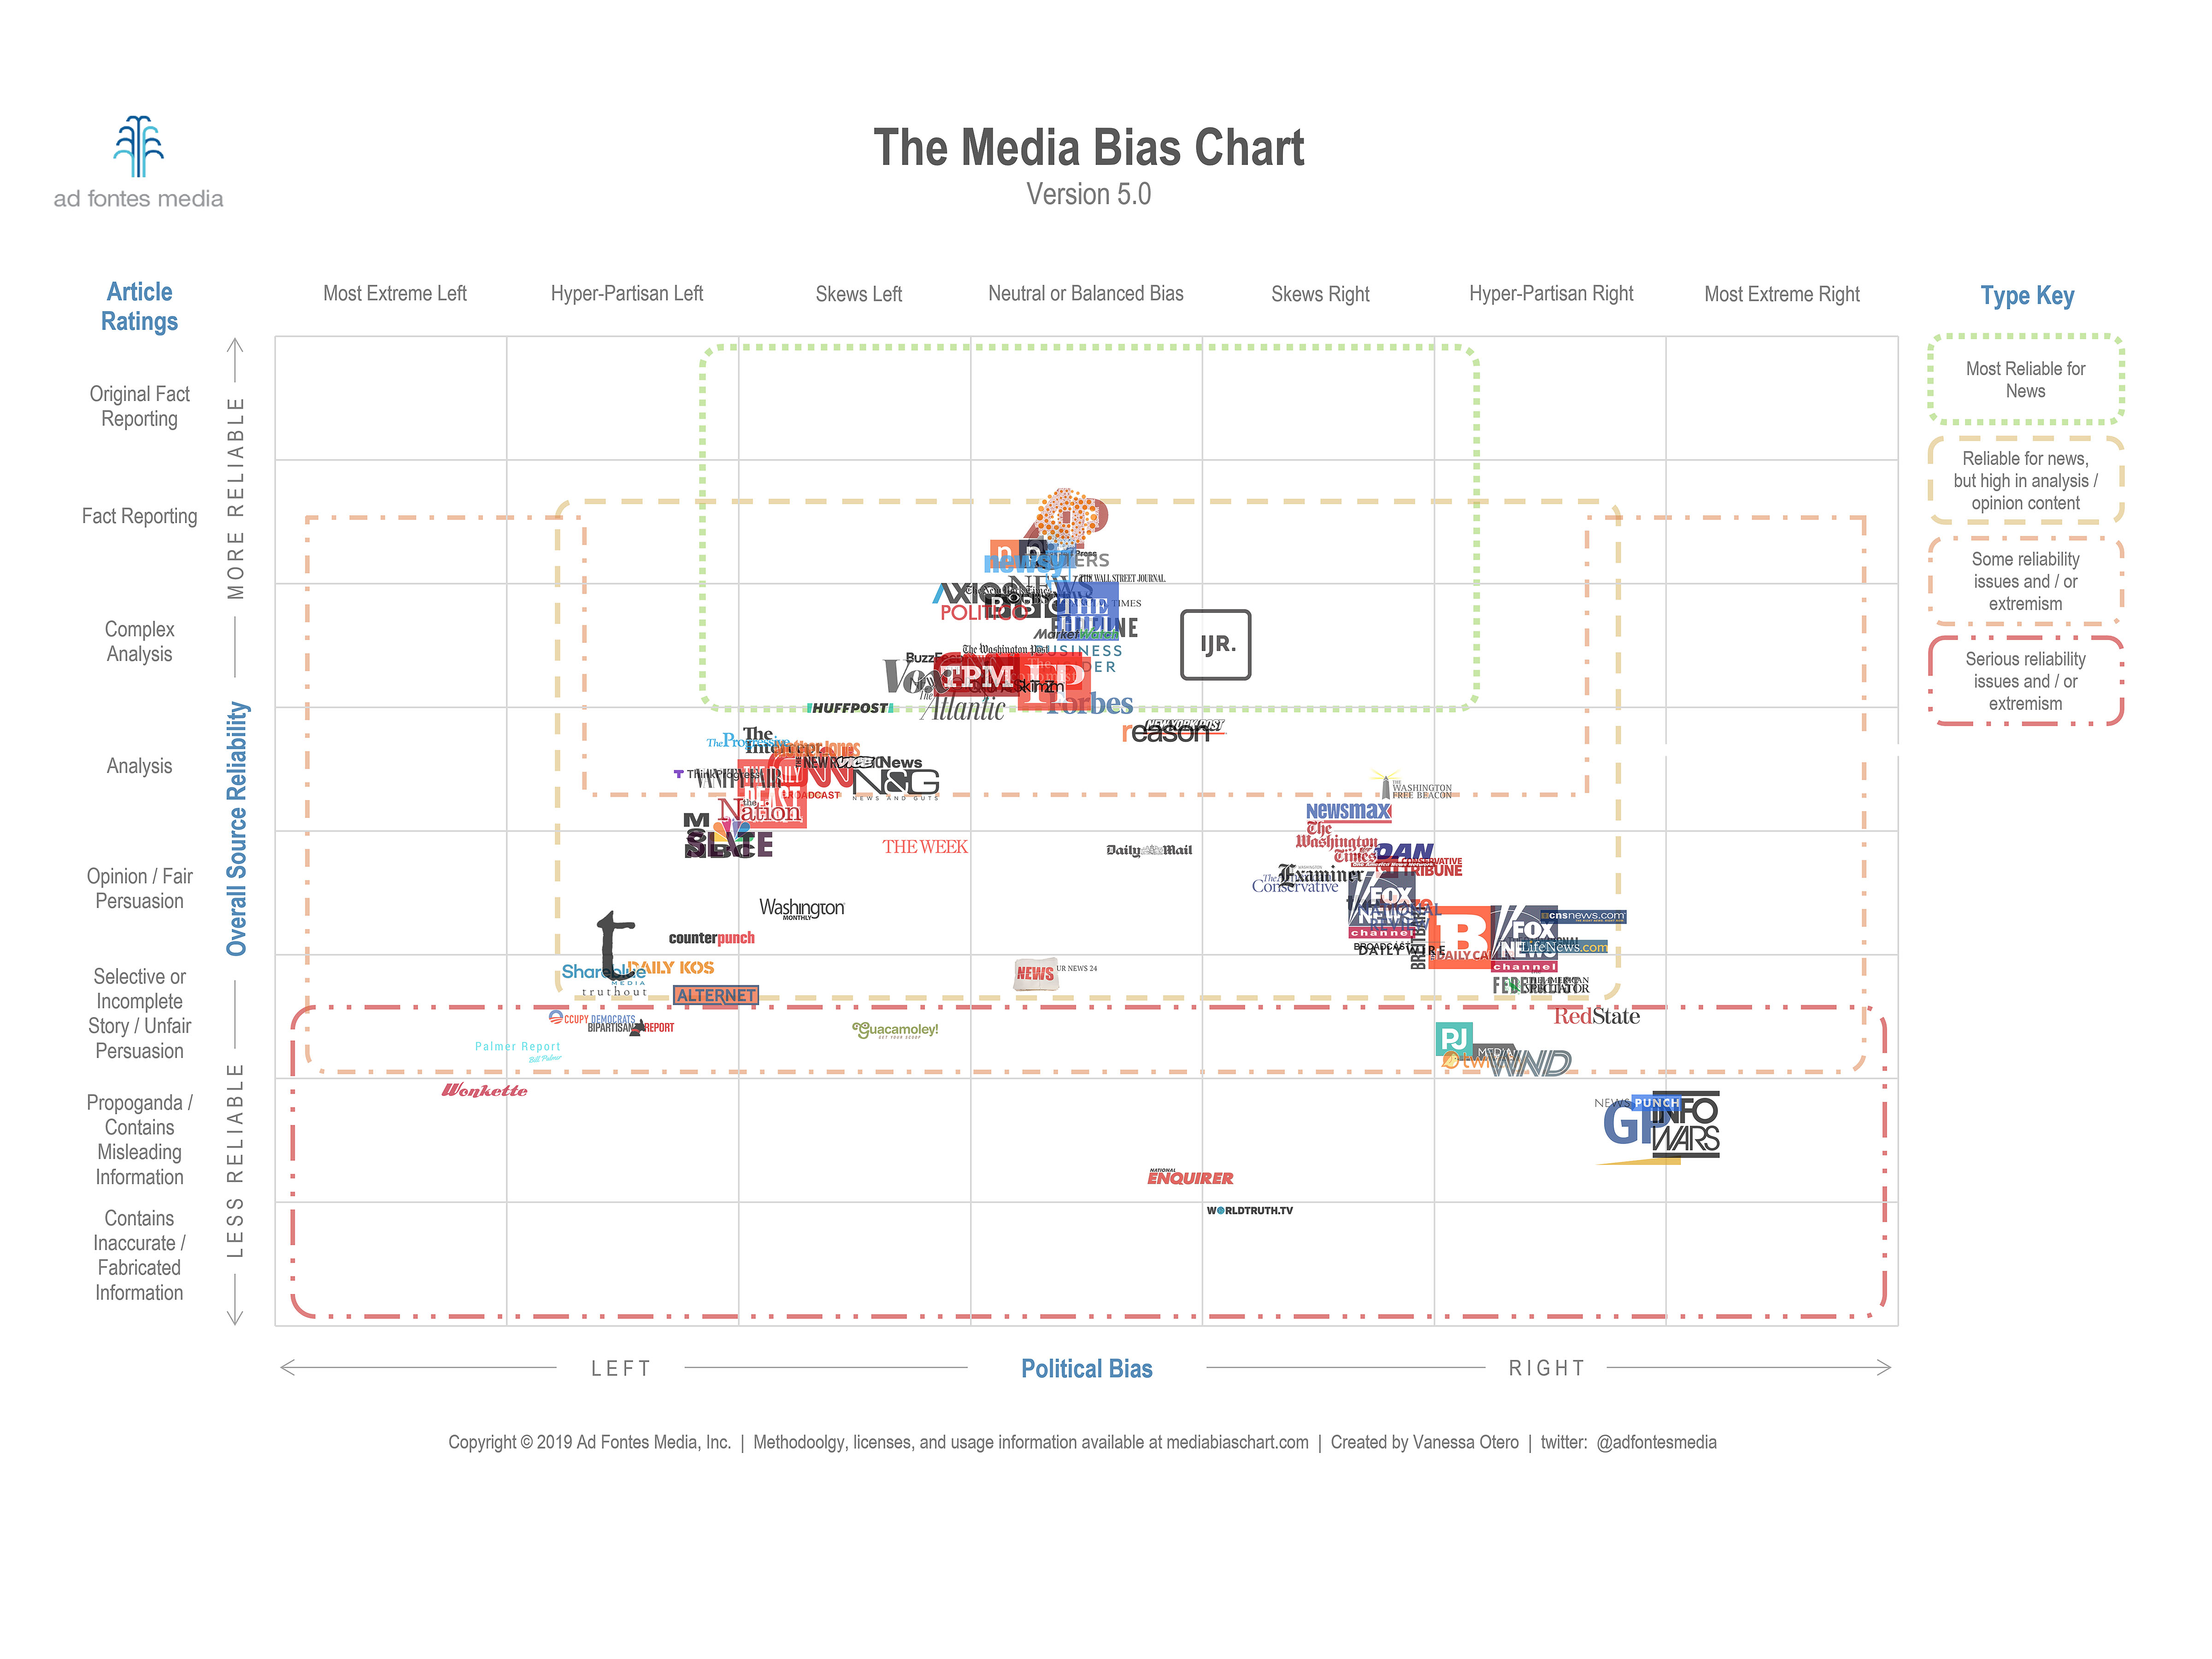 Interactive Media Bias Chart - Ad Fontes Media - 